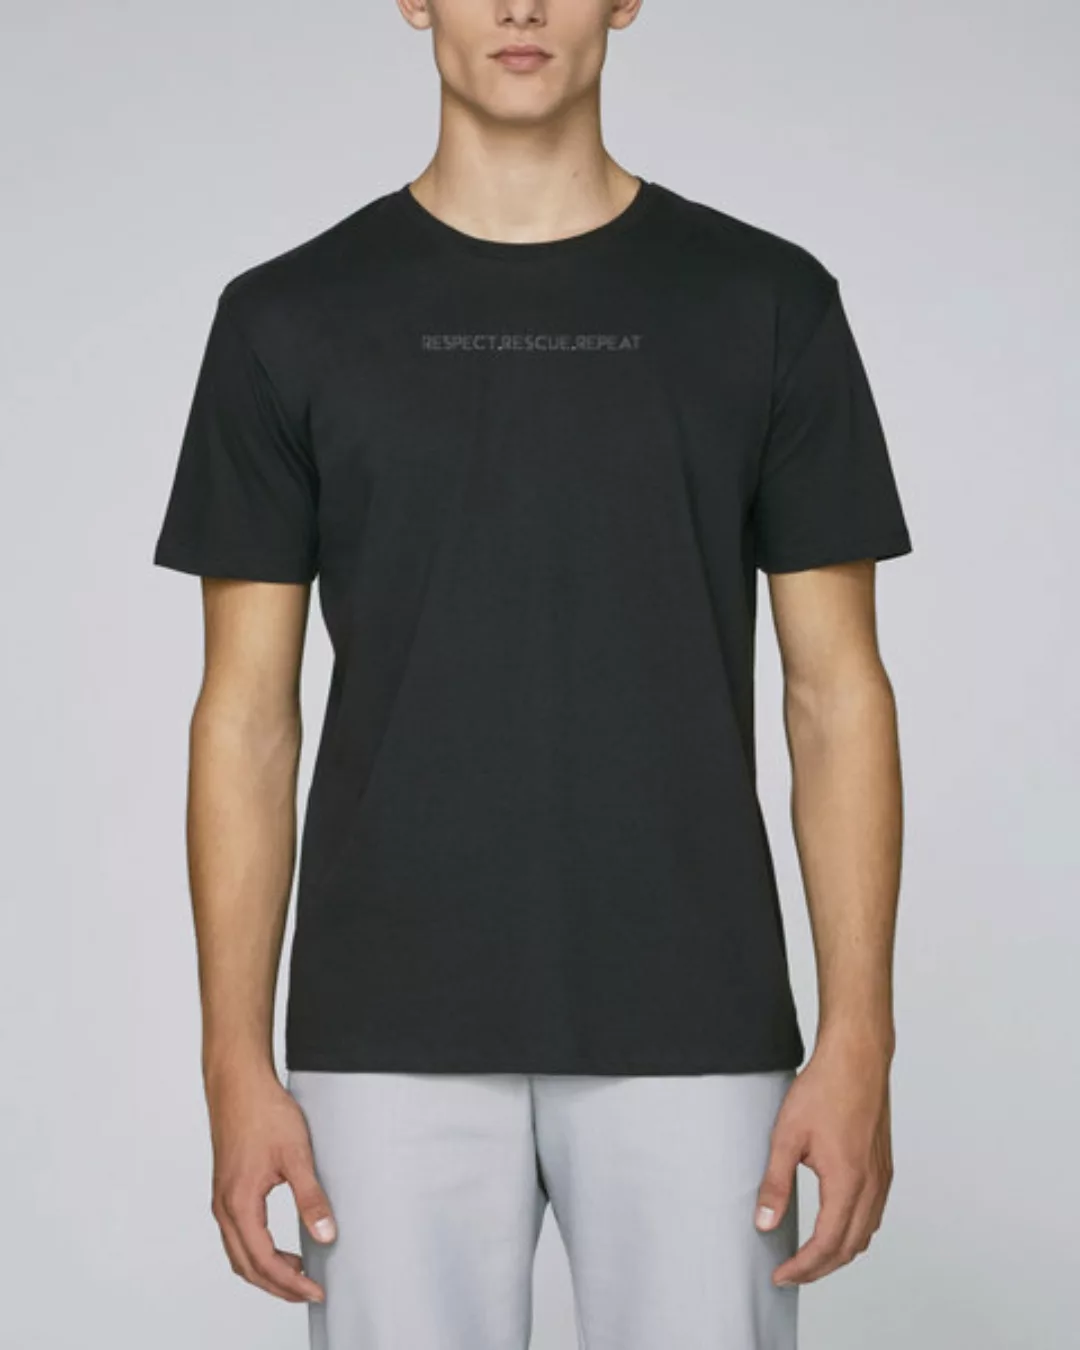 Herren Rundhals Bio T-shirt "Actor - Respect" günstig online kaufen